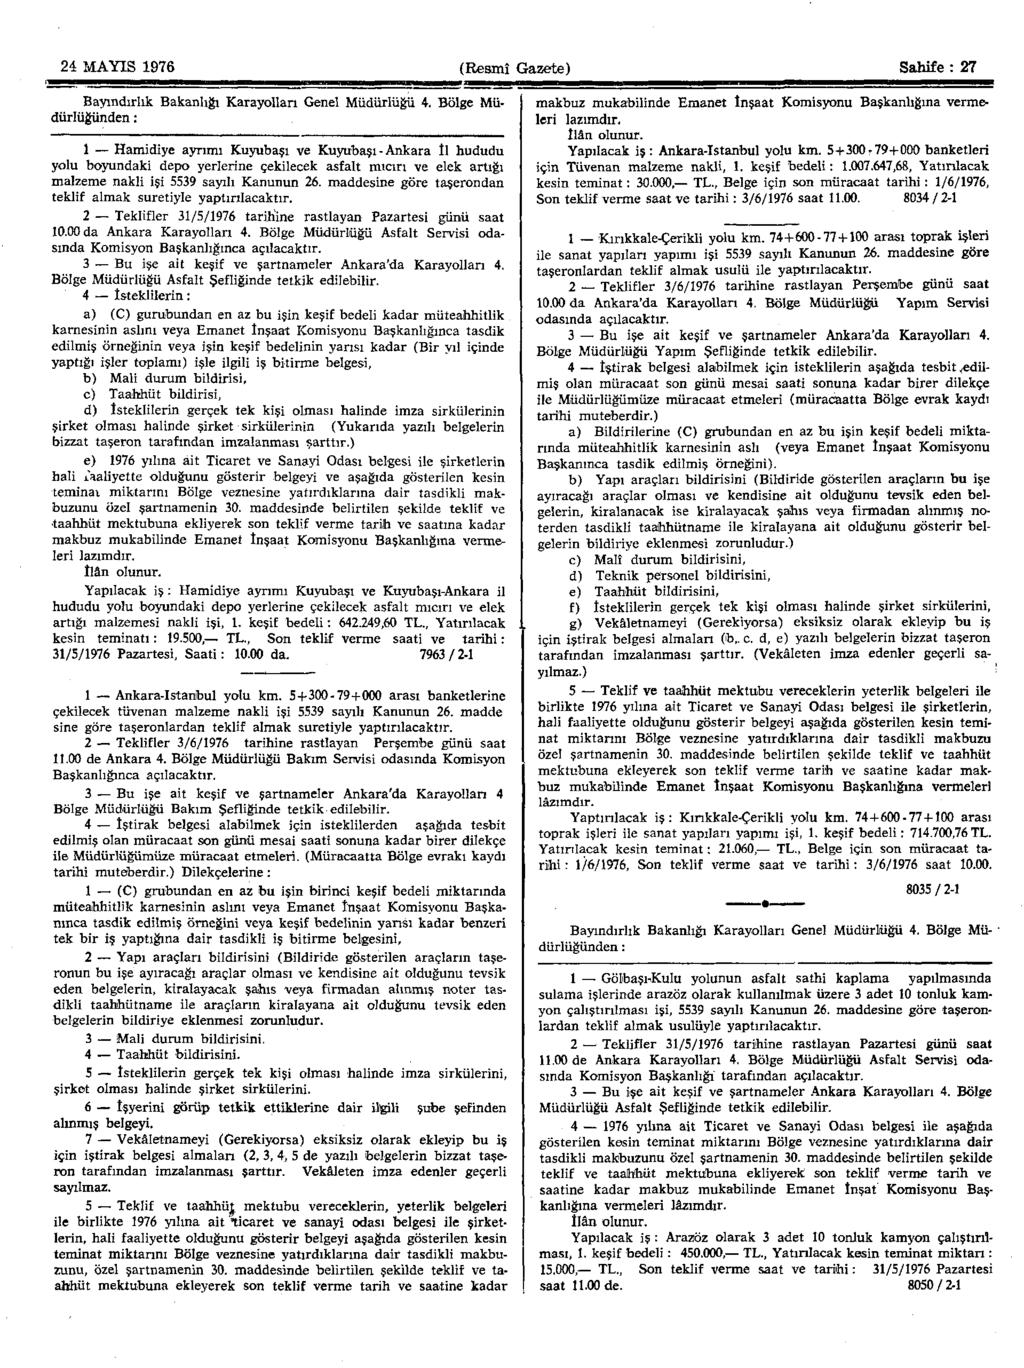 24 MAYIS 1976 (Resmî Gazete) Sahife : 27 Bayındırlık Bakanlığı Karayolları Genel Müdürlüğü 4.